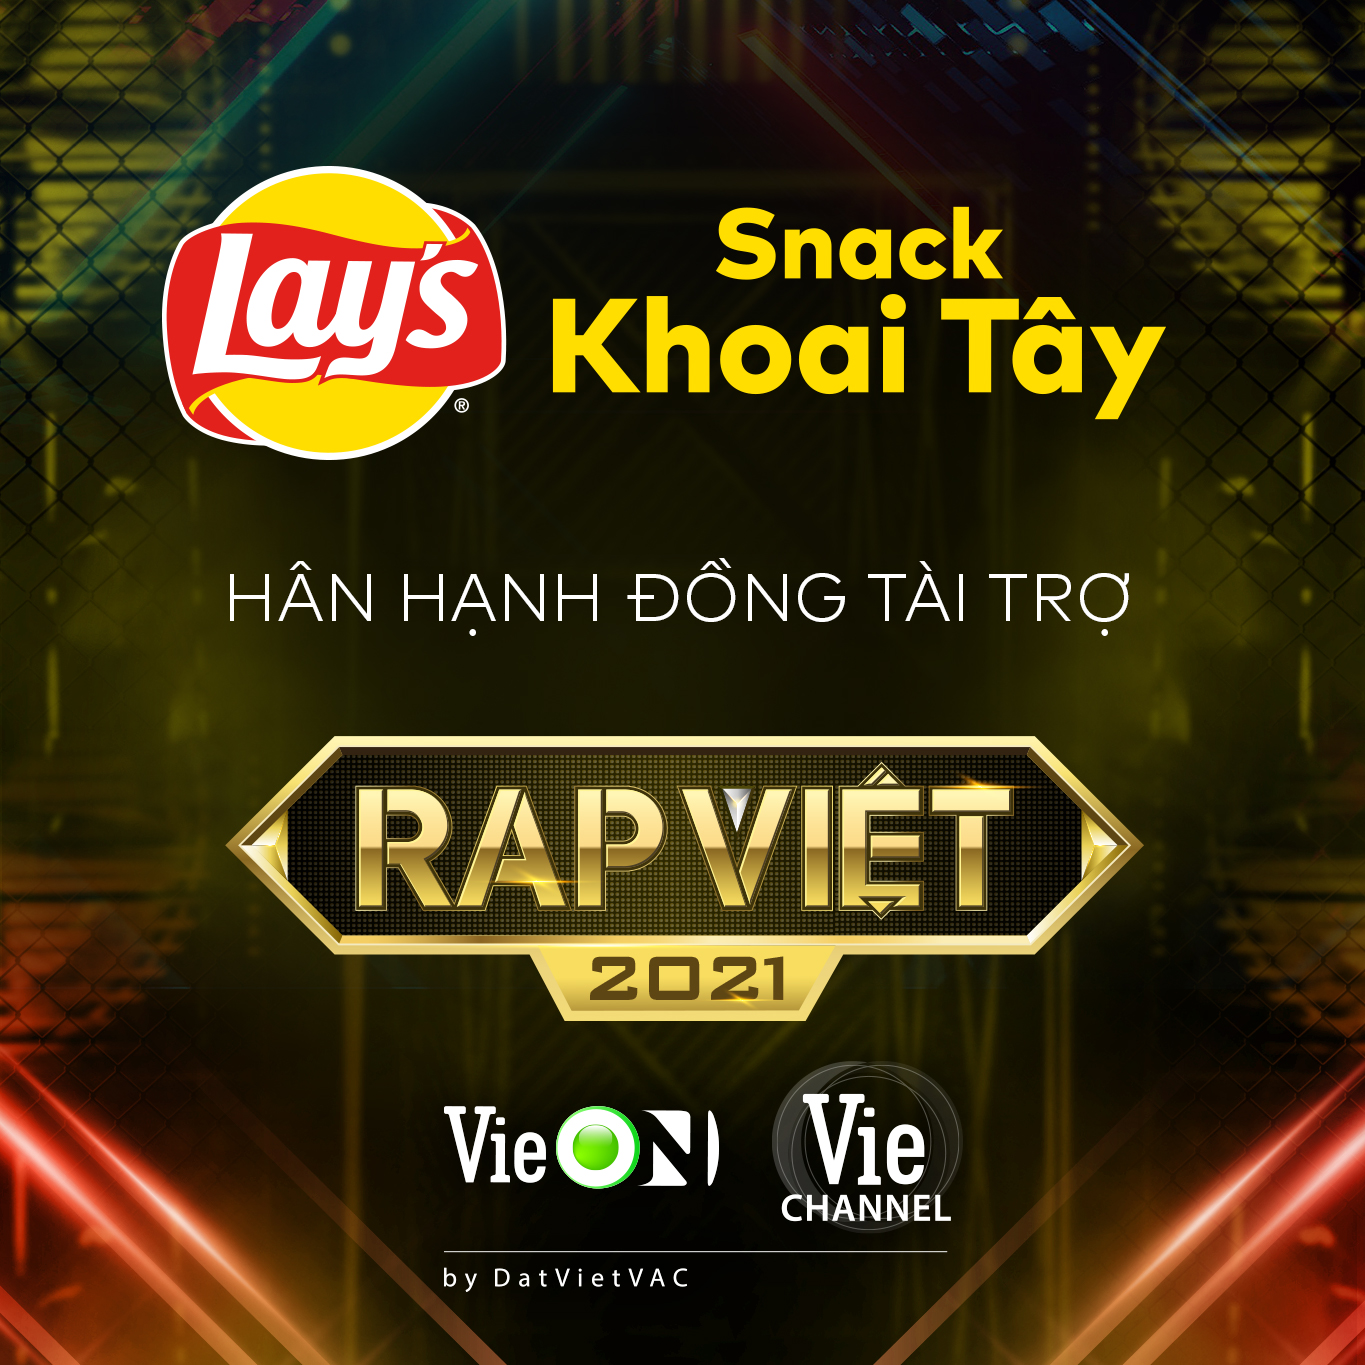 Thương hiệu Snack Khoai Tây Lay's Việt Nam chính thức trở thành Nhà Đồng Tài Trợ cuộc thi Rap Việt mùa 02 - ảnh 1